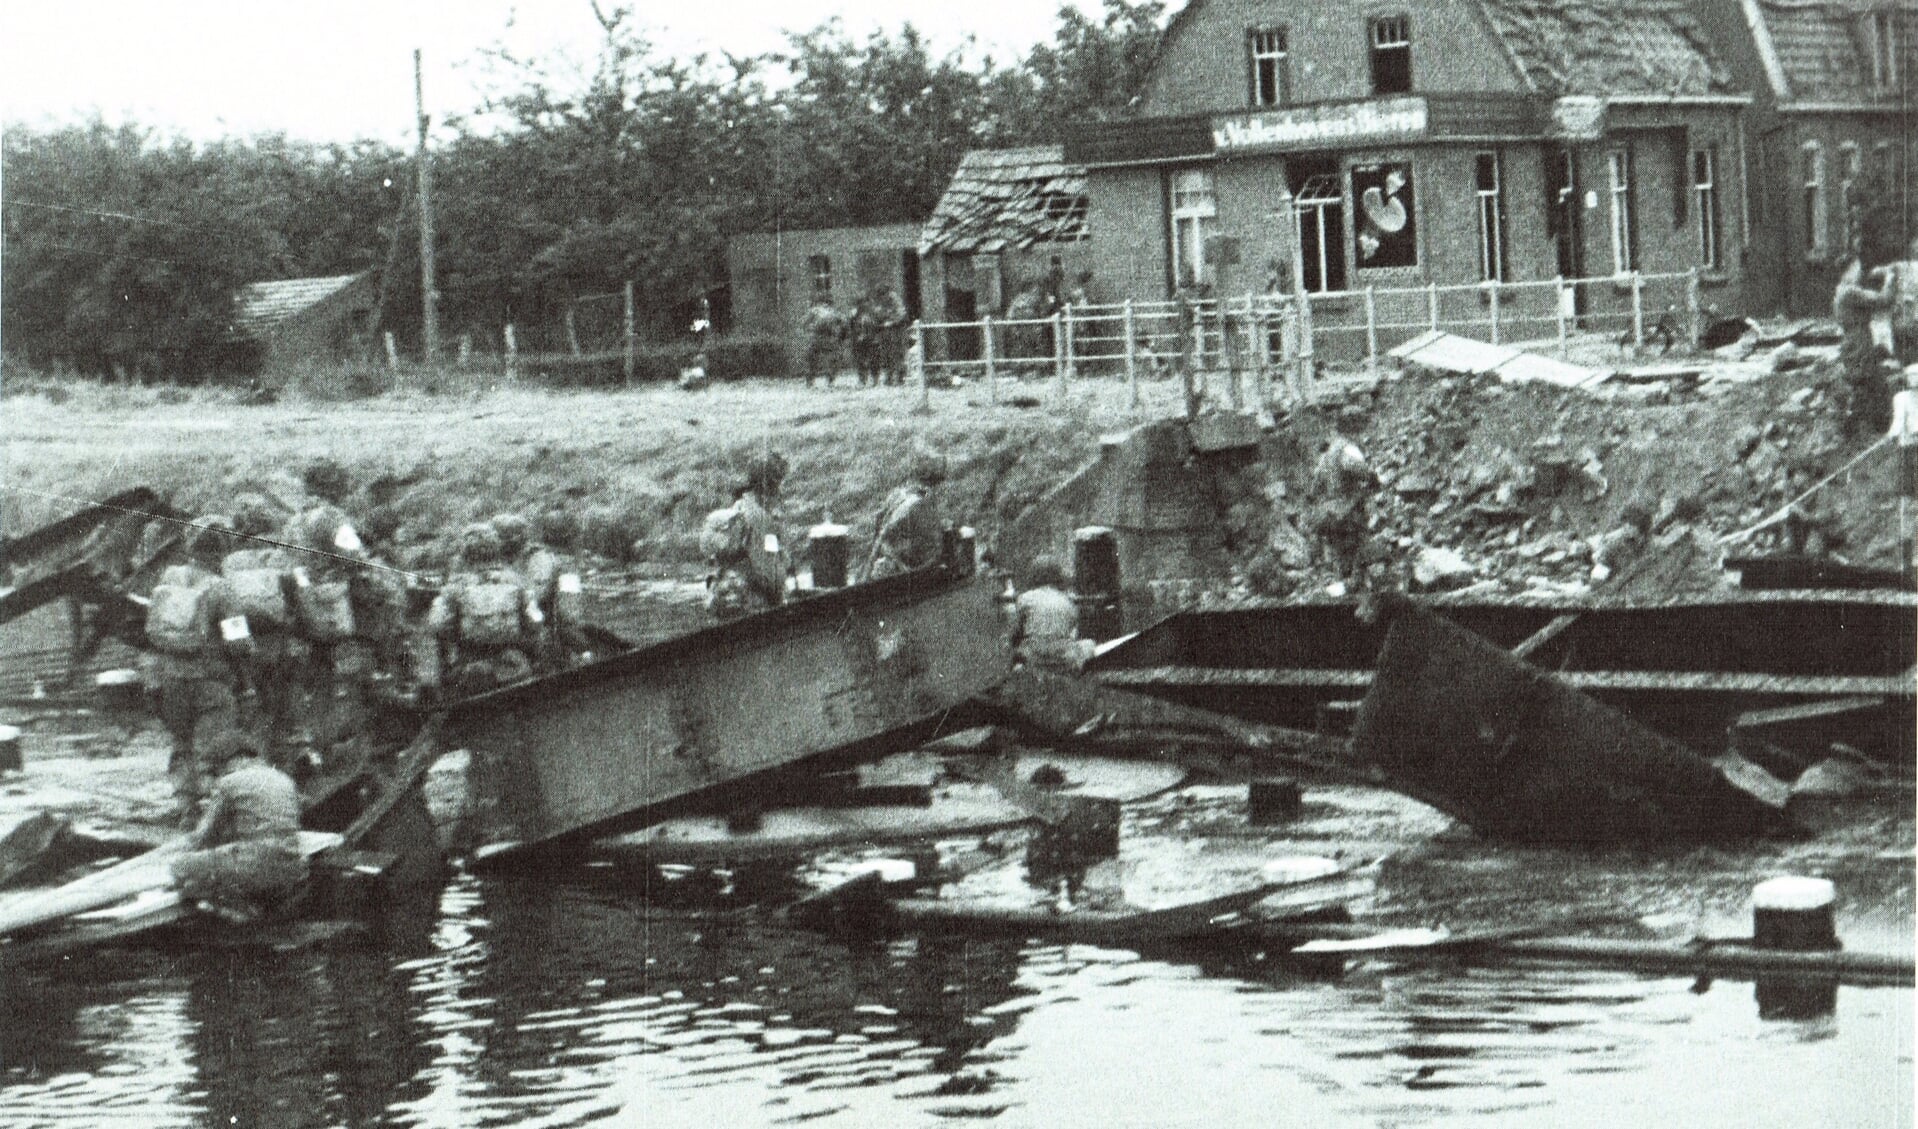 de vernielde brug over het kanaal, op 17 september 1944 door de Duitsers opgeblazen. Aannemer Lavrijssen had gauw al planken aangeleverd voor een droge oversteek naar Eindhoven